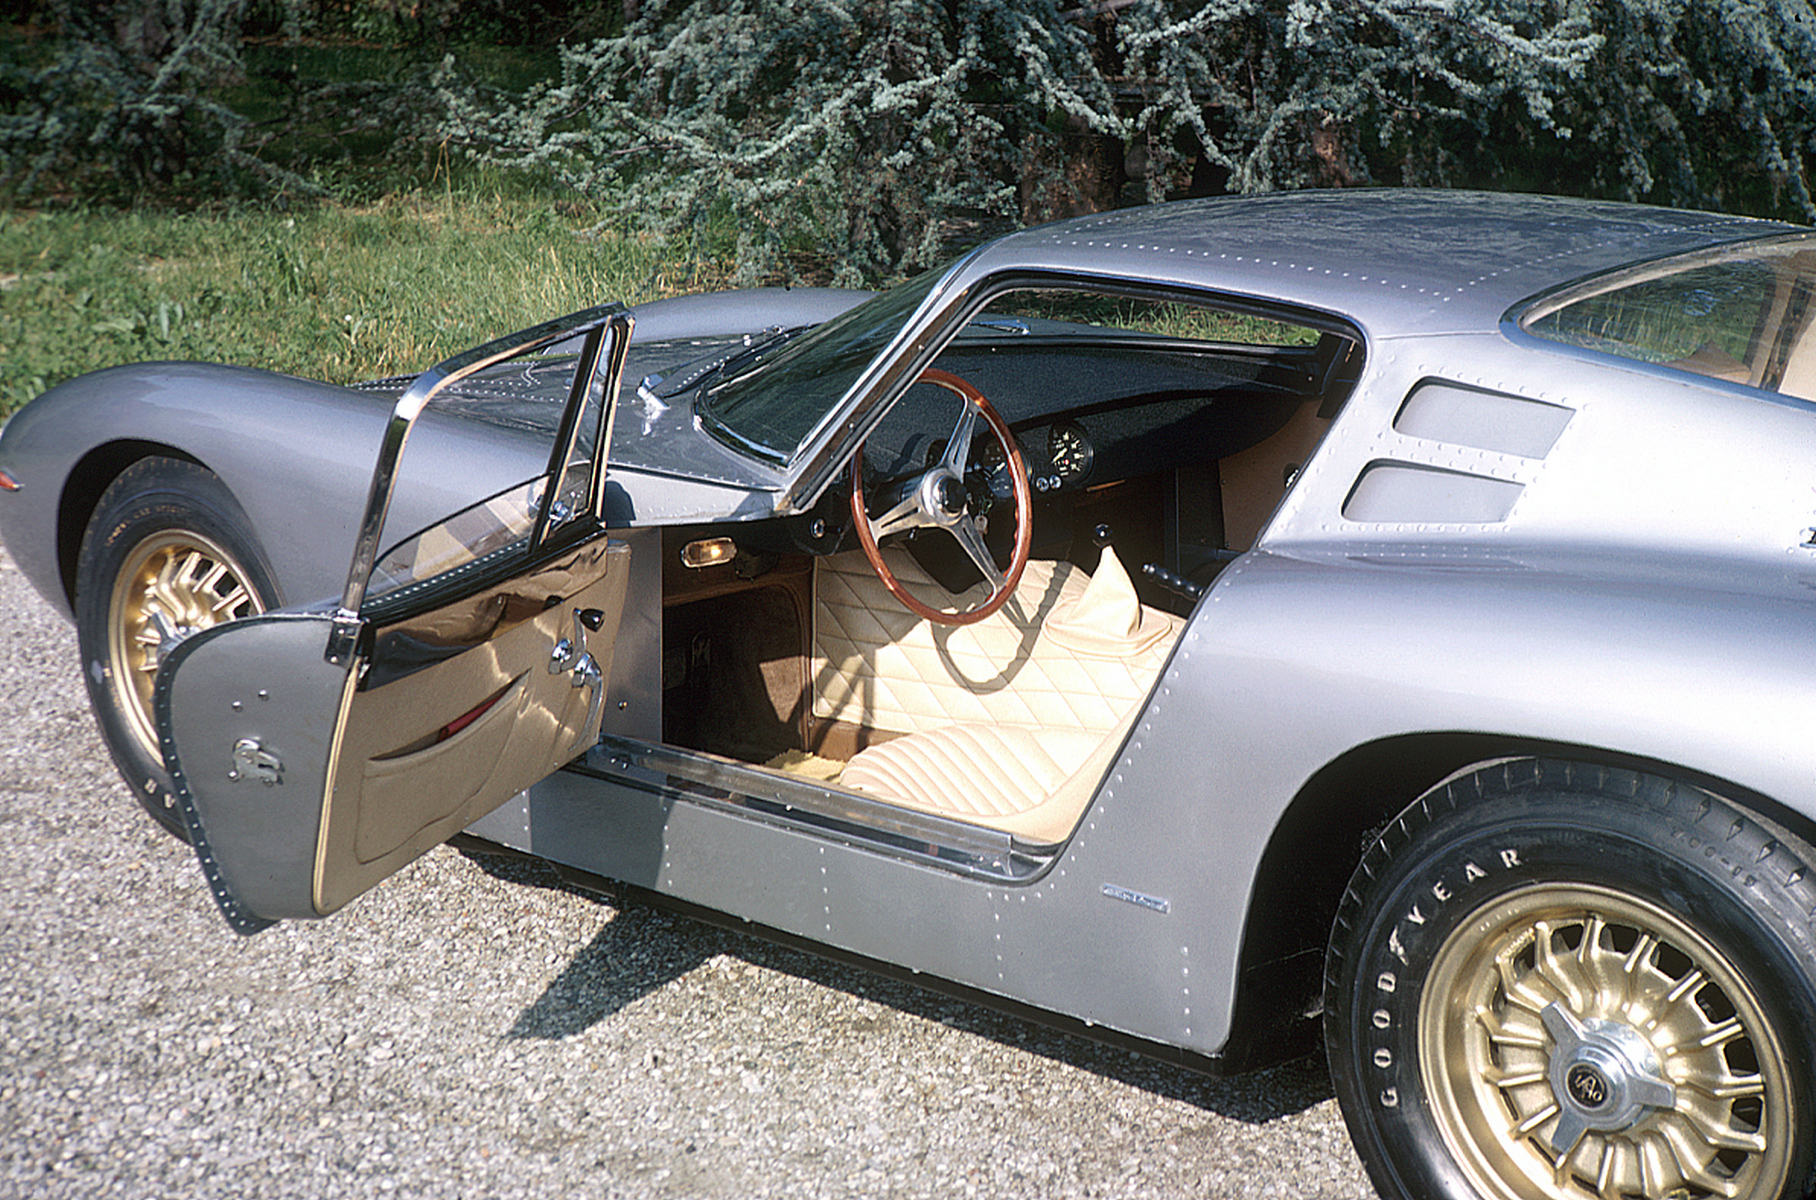 Версия A3/C задумывалась как гоночная — литера C означала «Corsa», «гонка». Тем не менее, машину можно было заказать и в дорожном исполнении, с хорошо отделанным салоном и нормальными опускными стёклами.